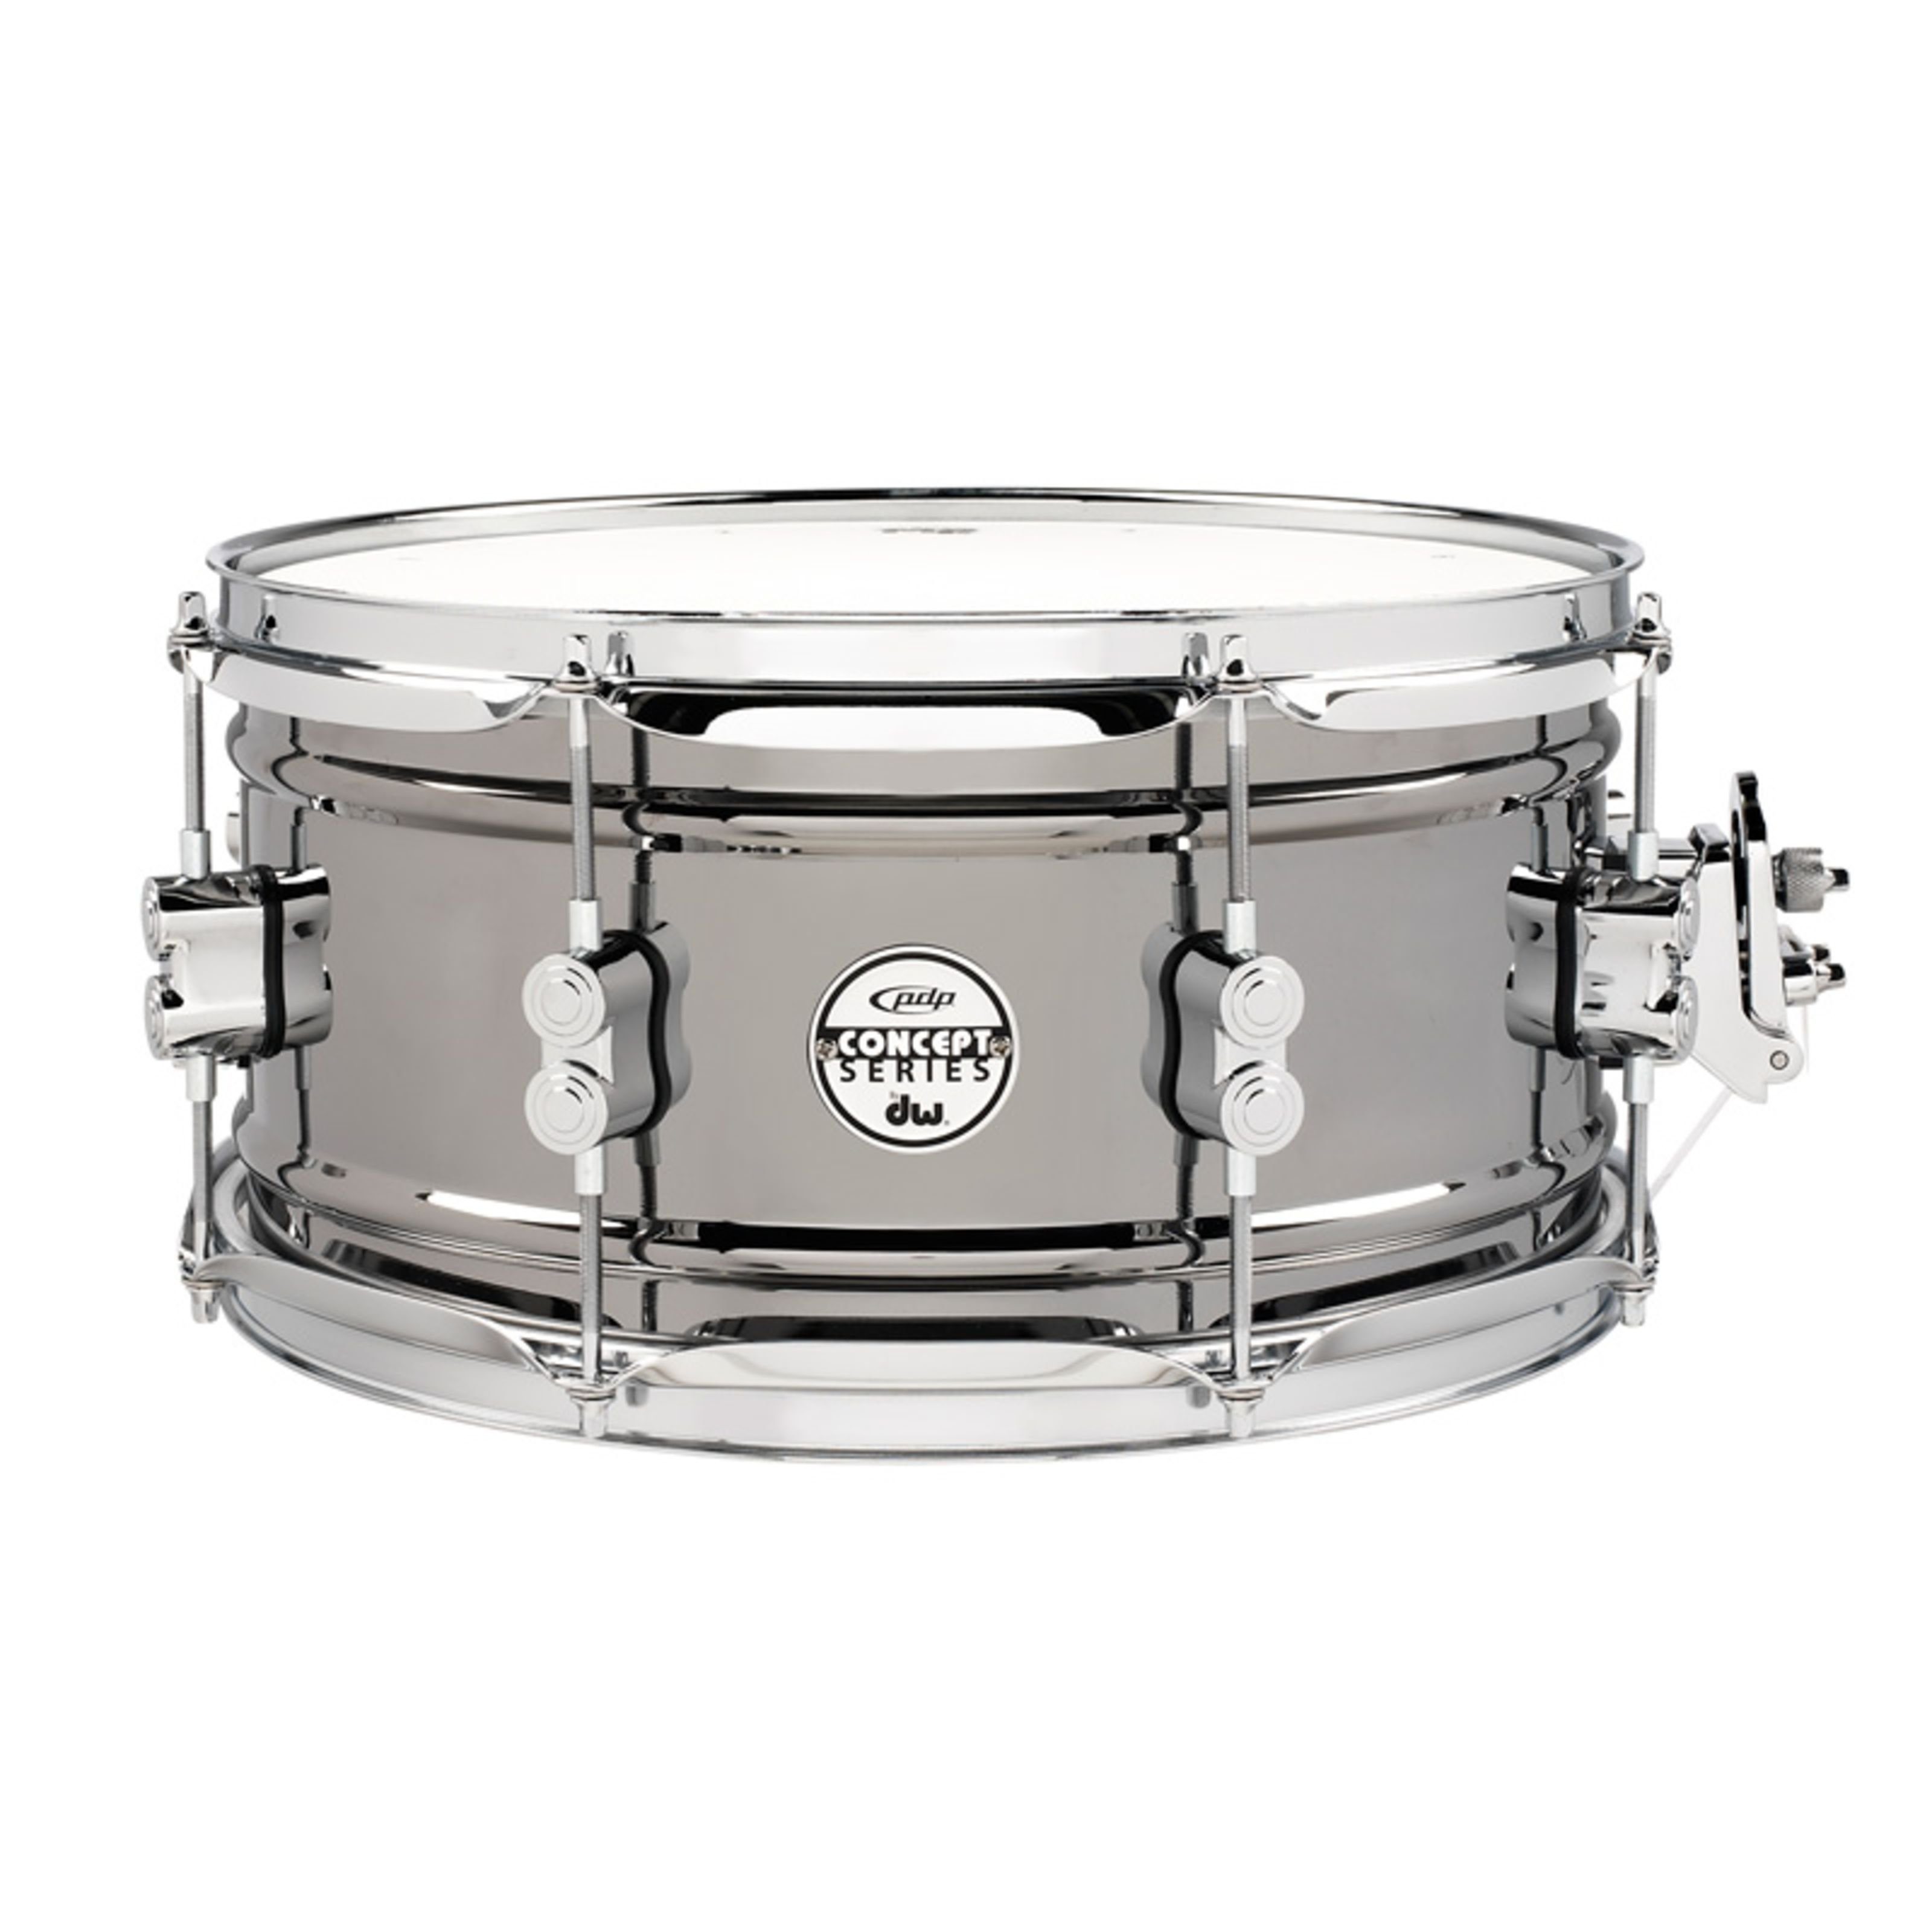 pdp Snare Drum,Black Nickel Steel Snare 13"x6,5", Schlagzeuge, Snare Drums, Black Nickel Steel Snare 13"x6,5" - Snare Drum